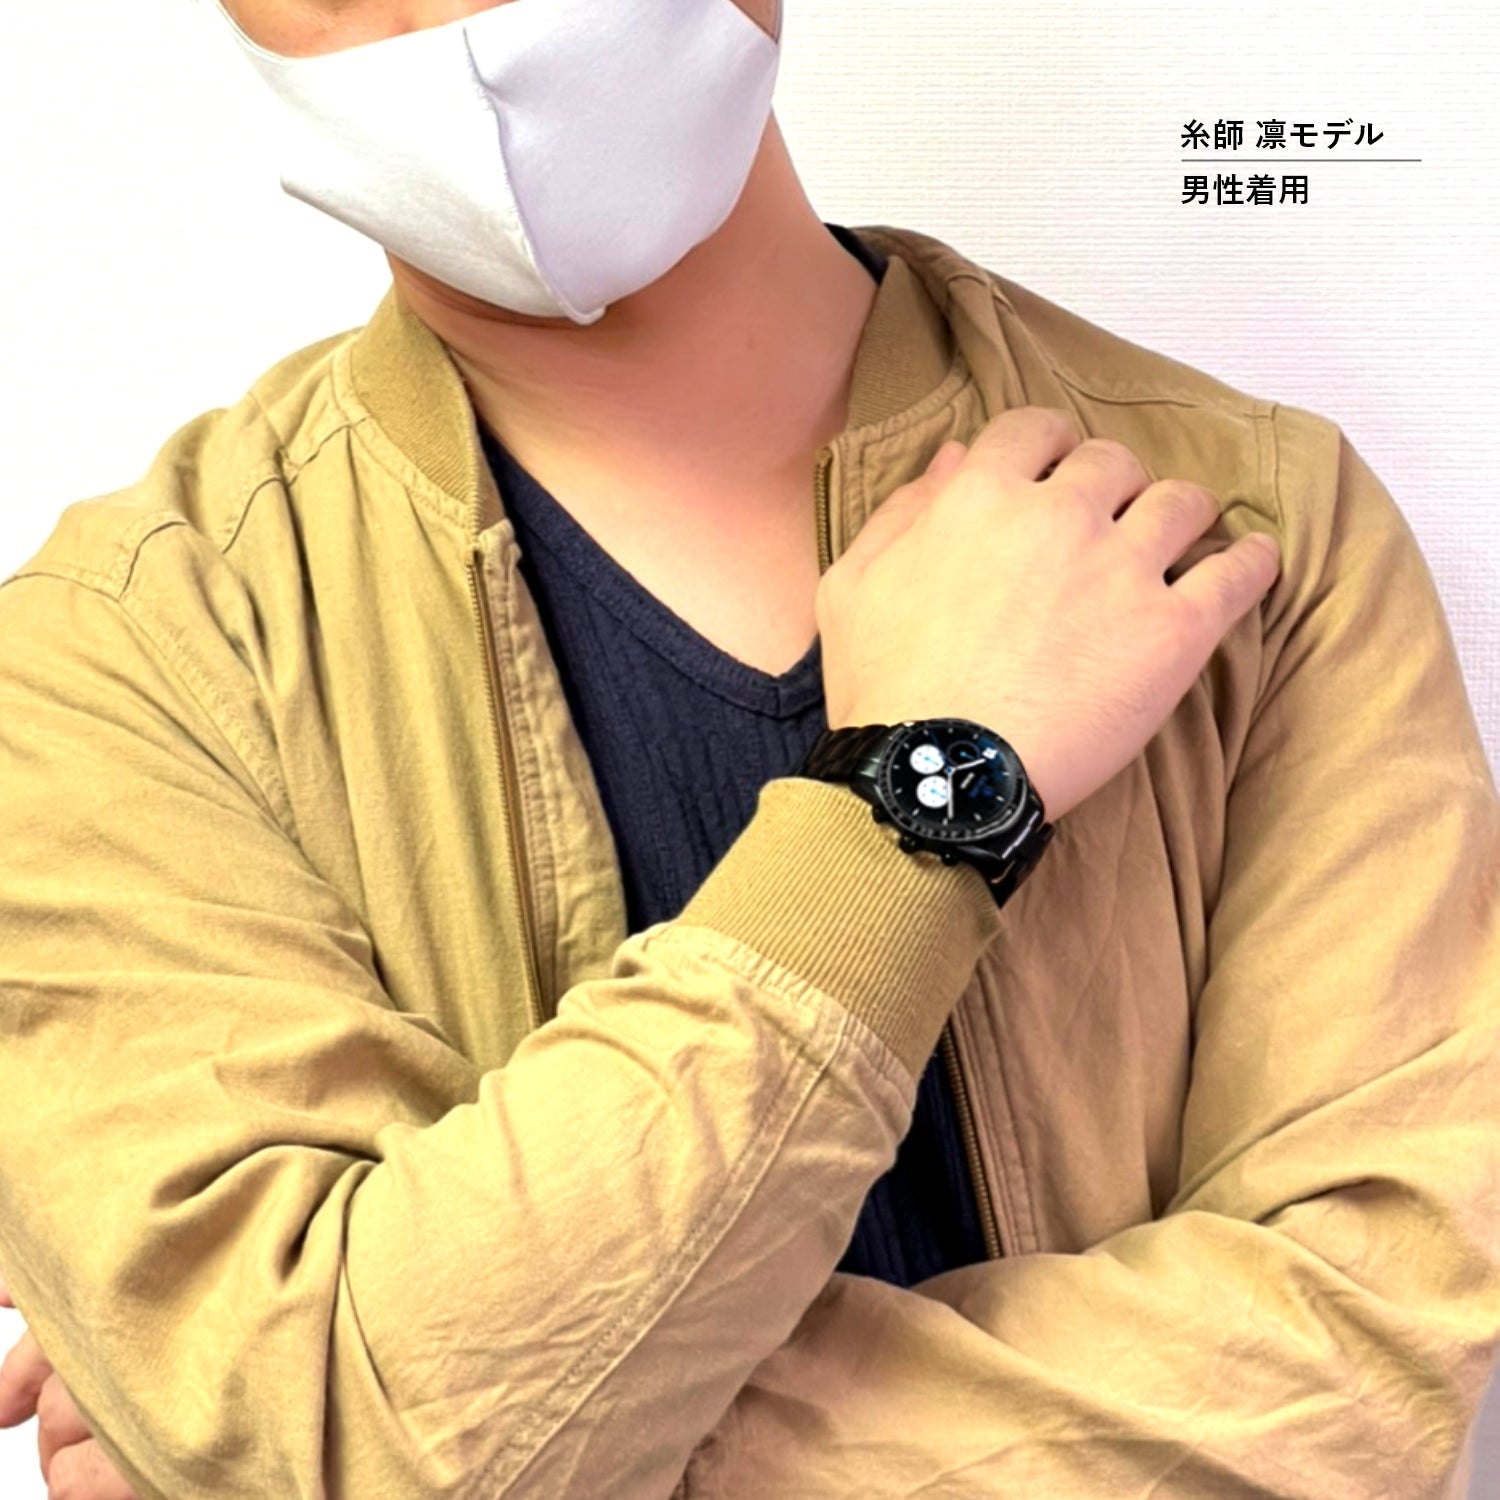 テレビアニメ「ブルーロック」オフィシャルクロノグラフ腕時計 千切 豹馬 - 公式通販サイト「アニメコレクション/Anime Collection」